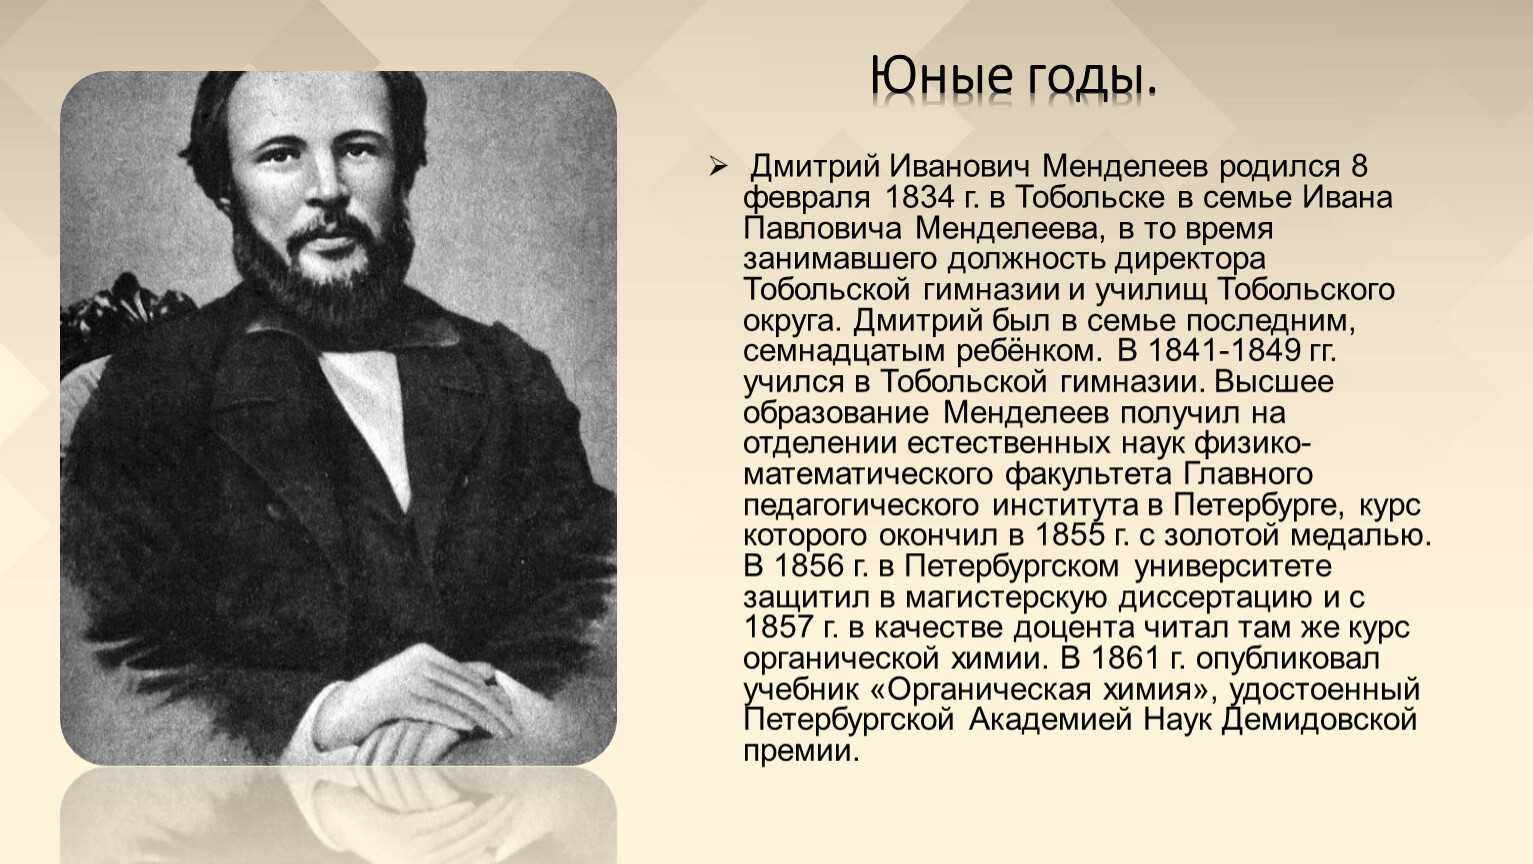 Дмитрий Иванович Менделе́ев